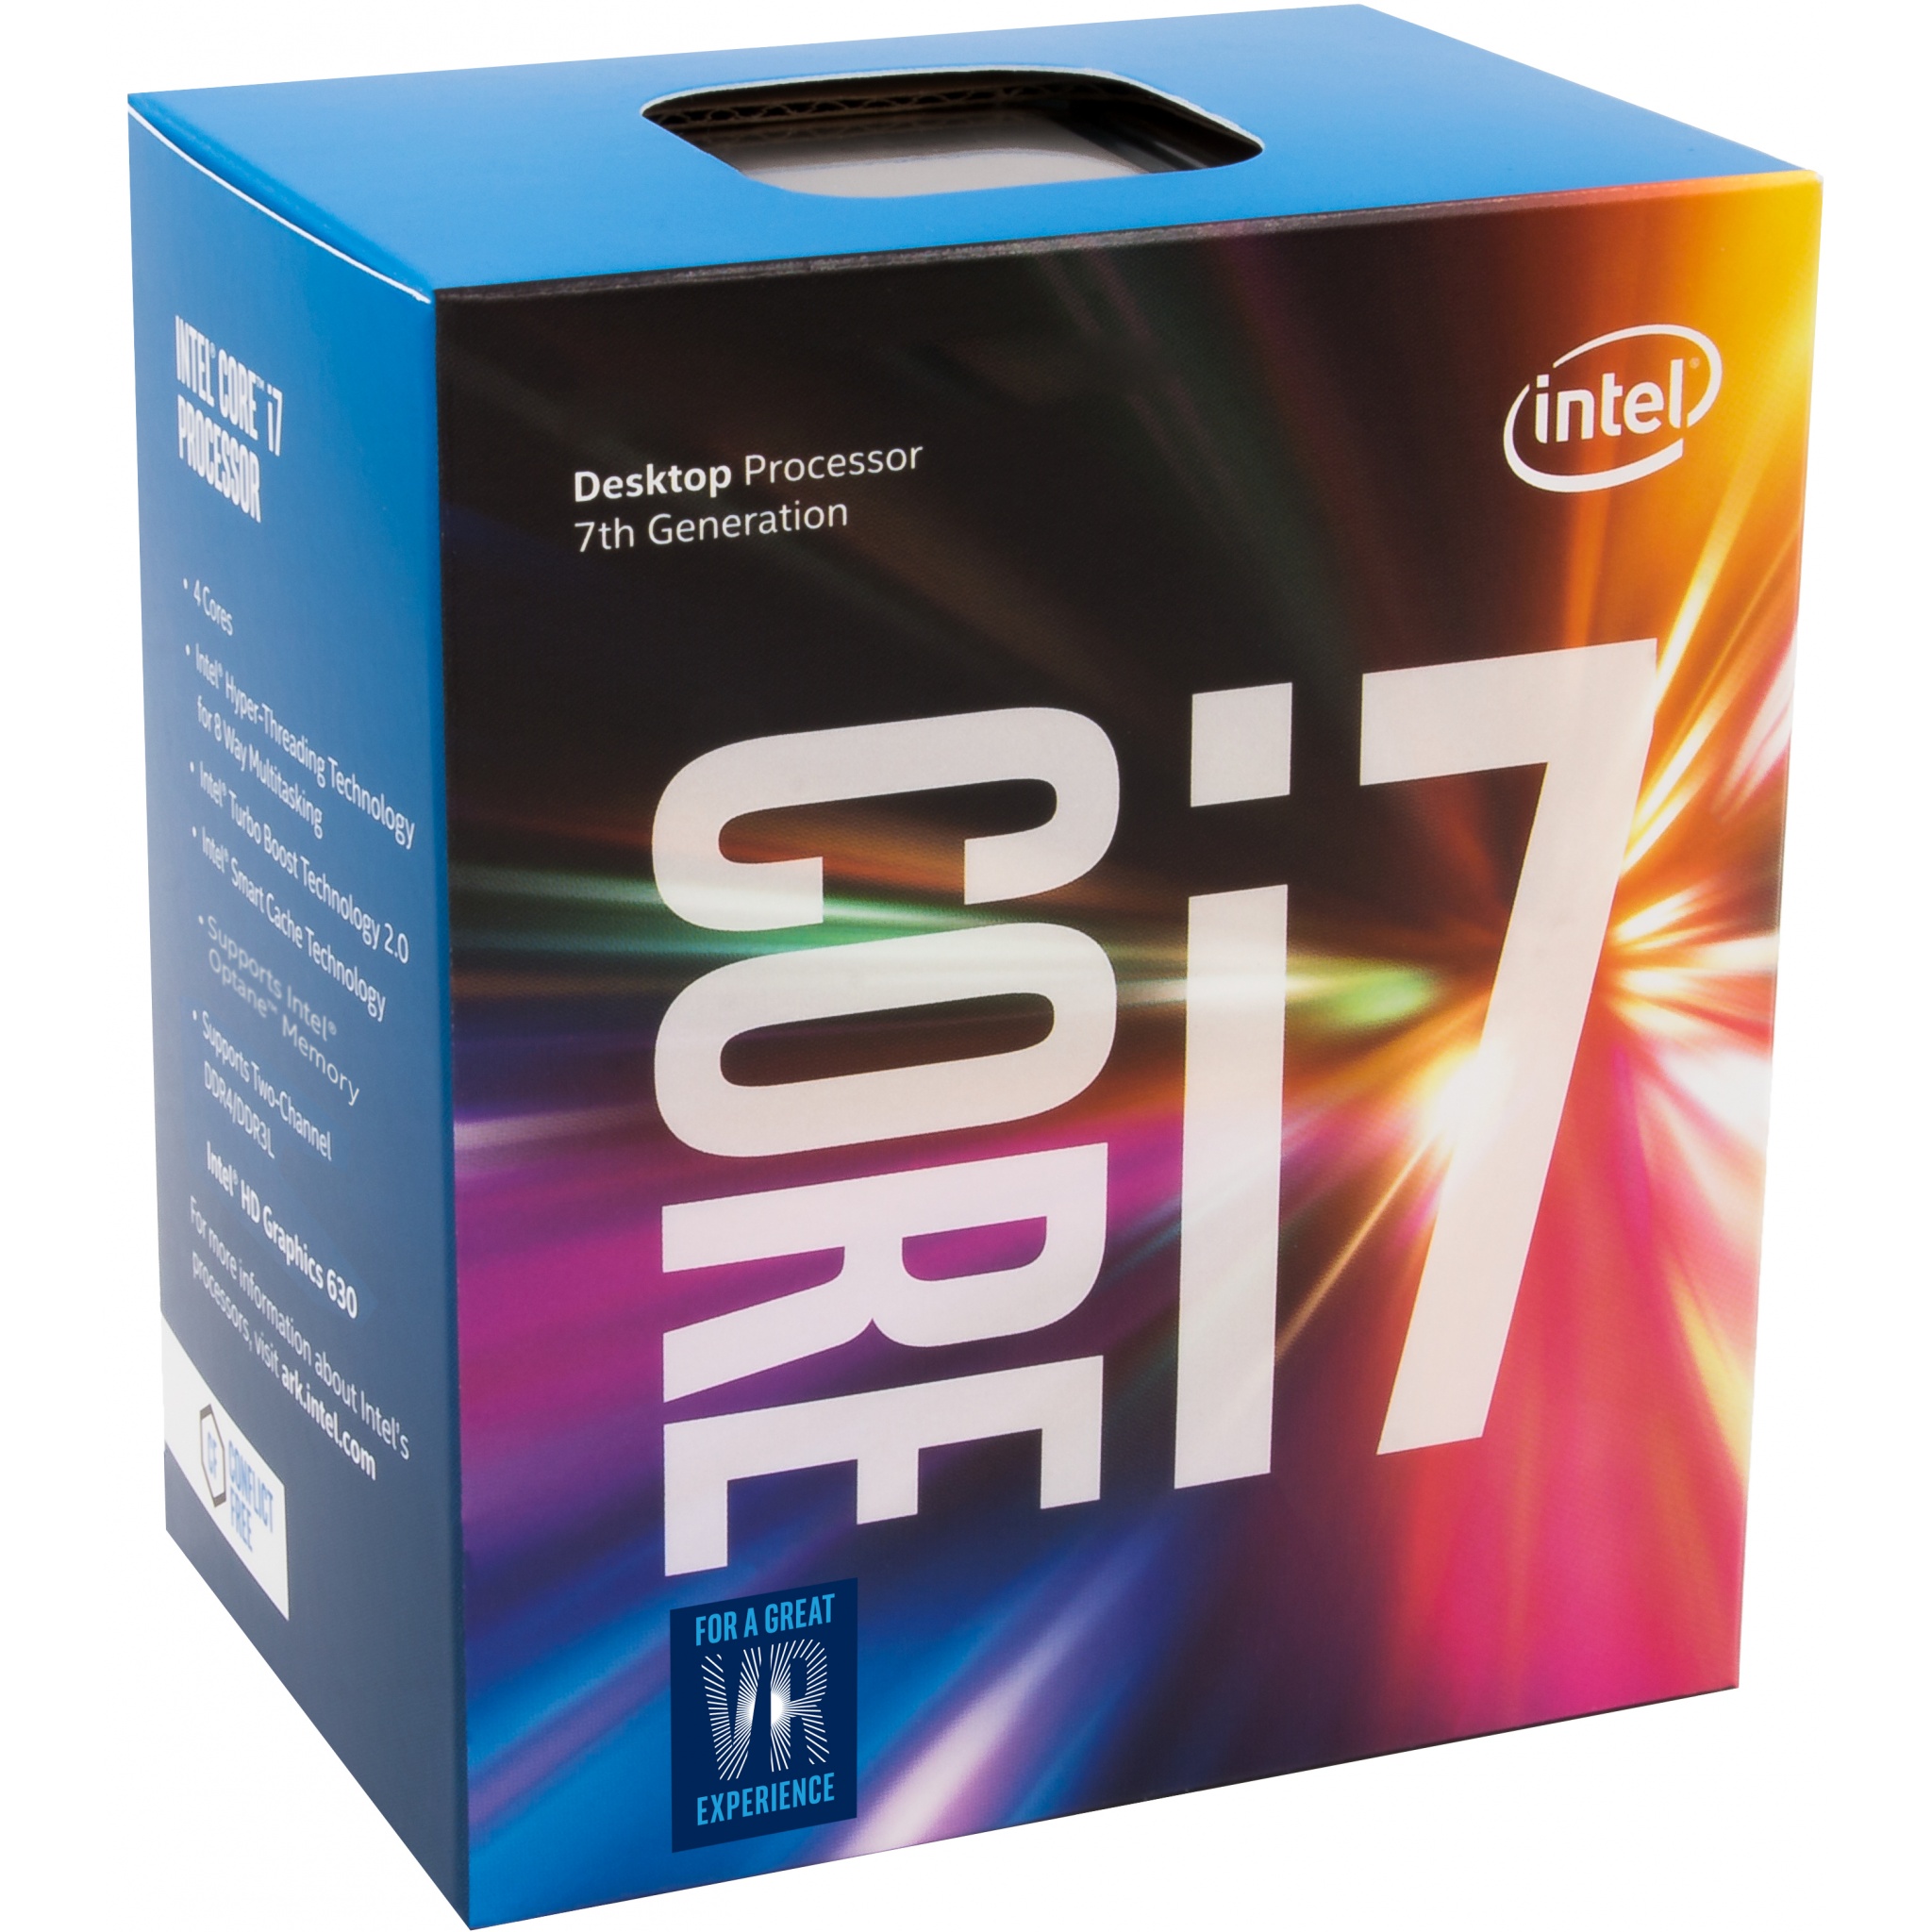 Intel Core i7-7700 3.6GHz Kaby Lake CPU LGA1151 Desktop Processor Boxed